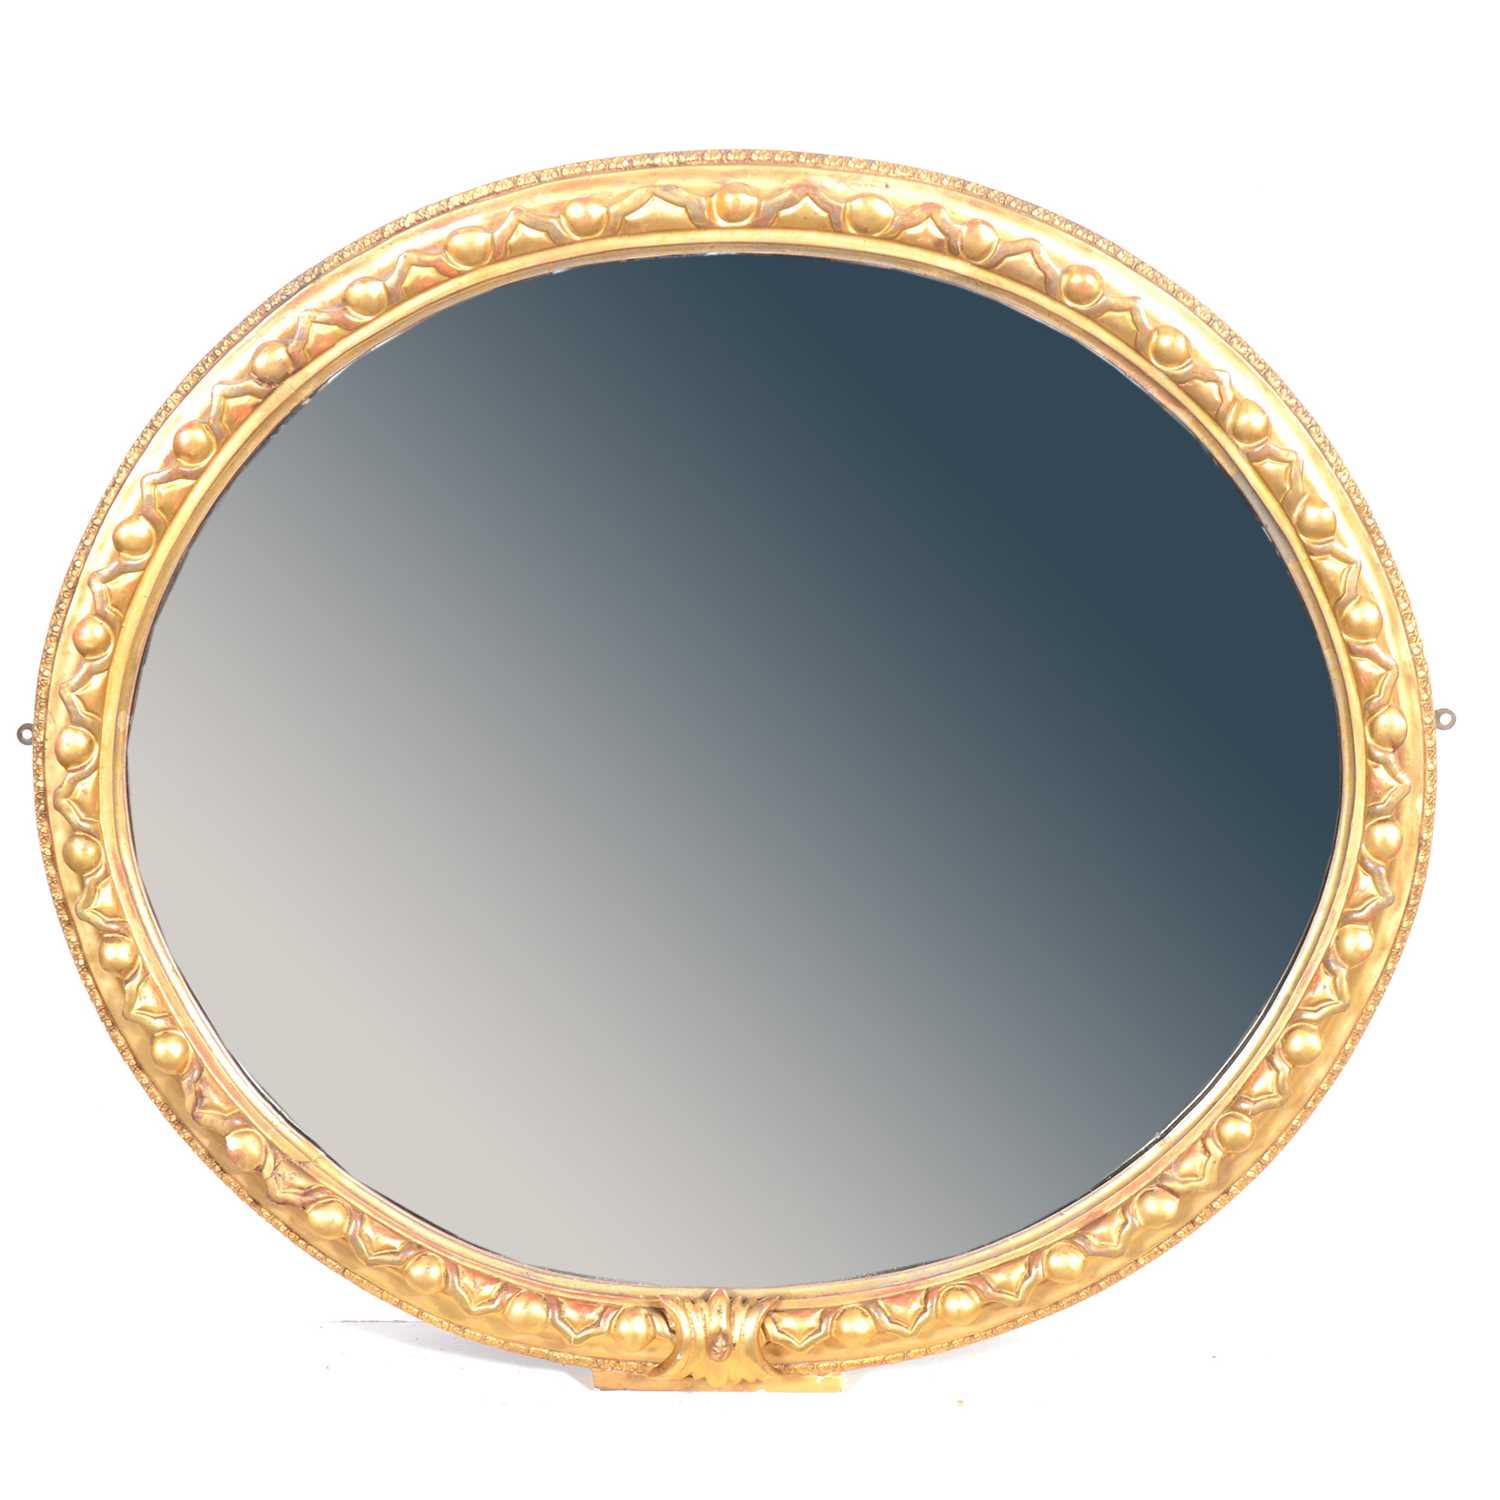 Oval gilt gesso wall mirror